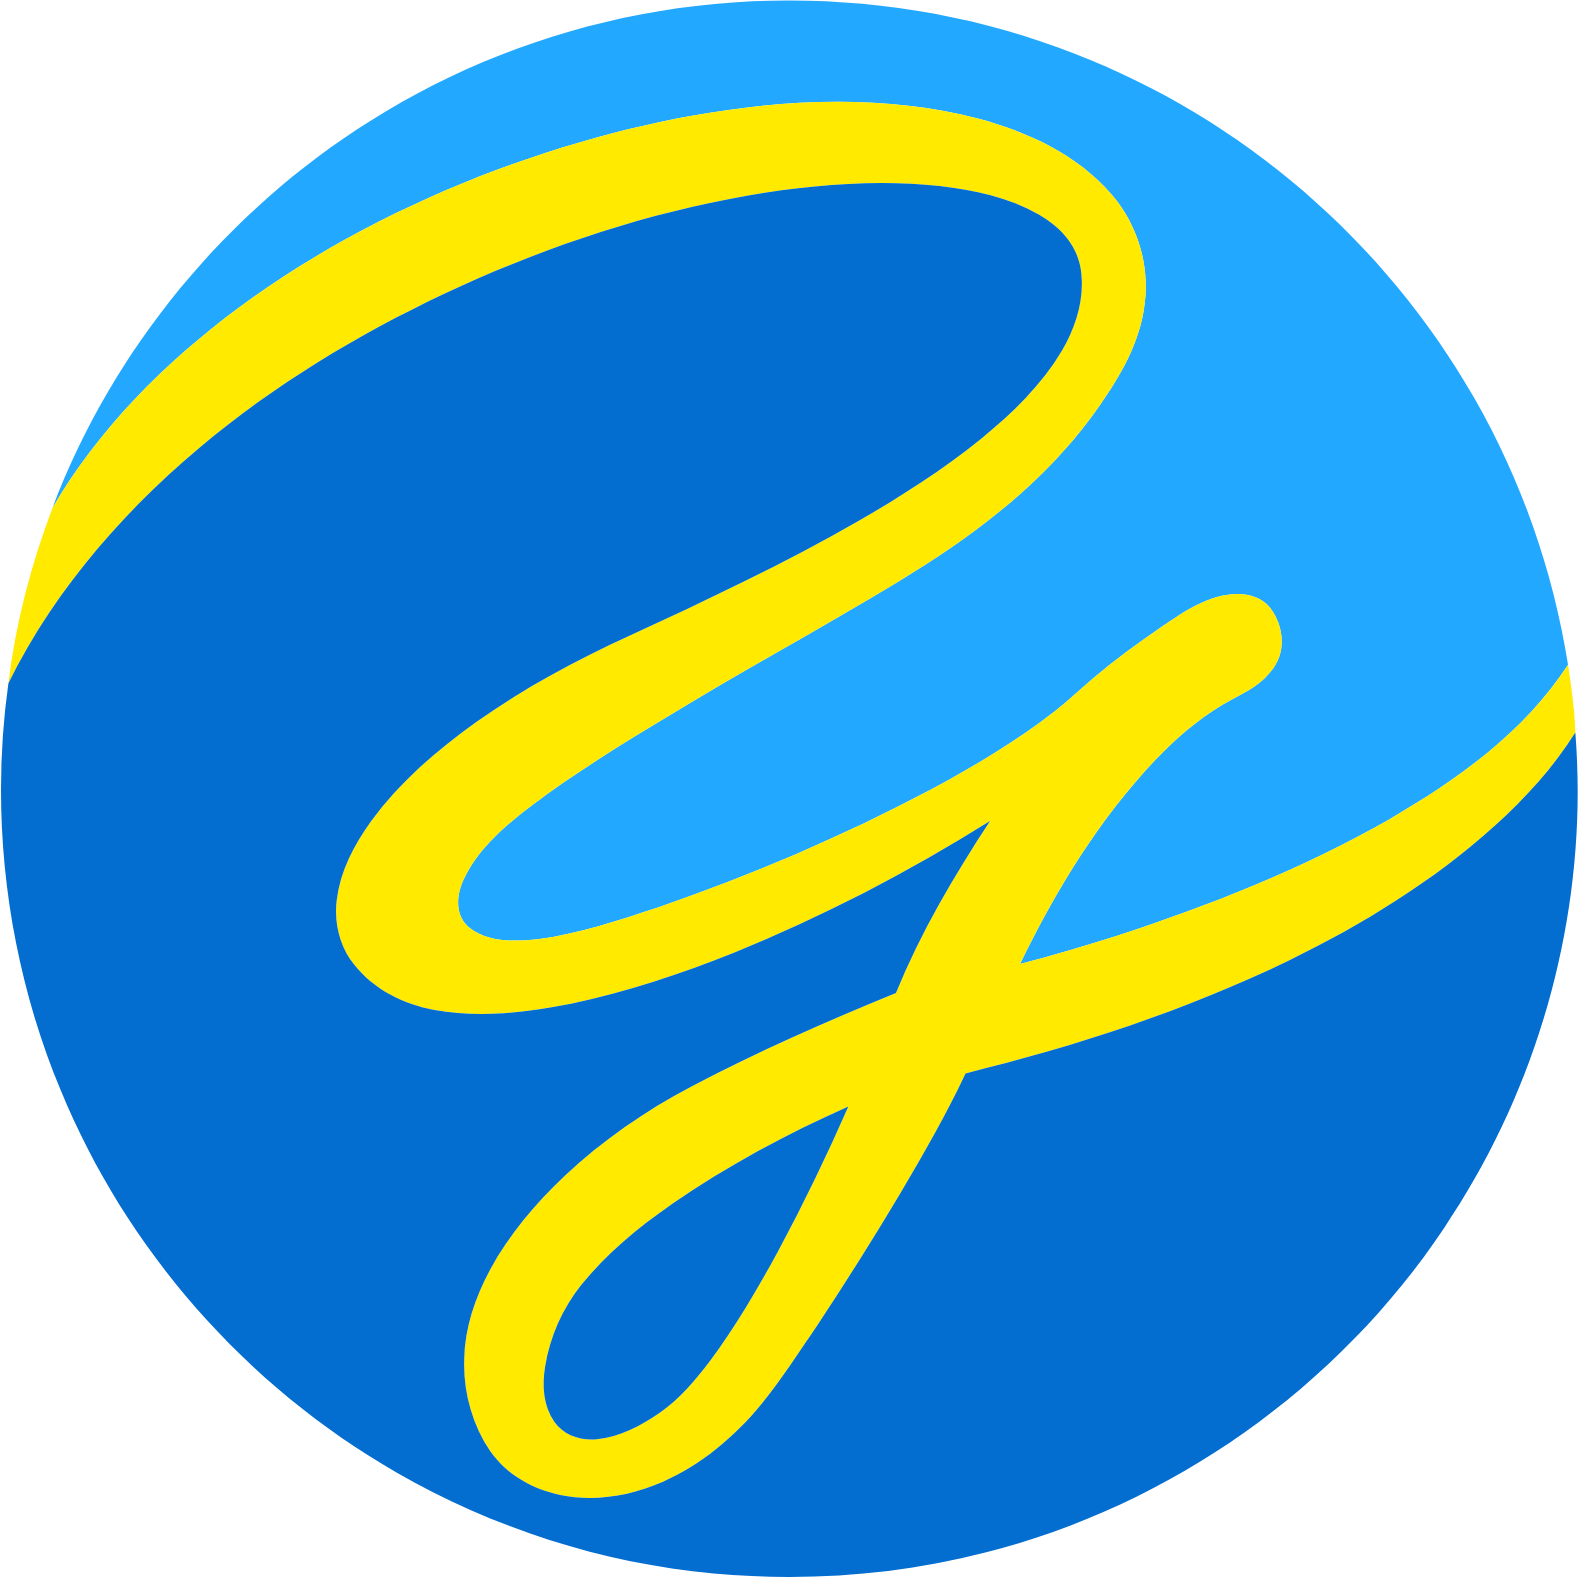 Yuke's logo (transparent PNG)